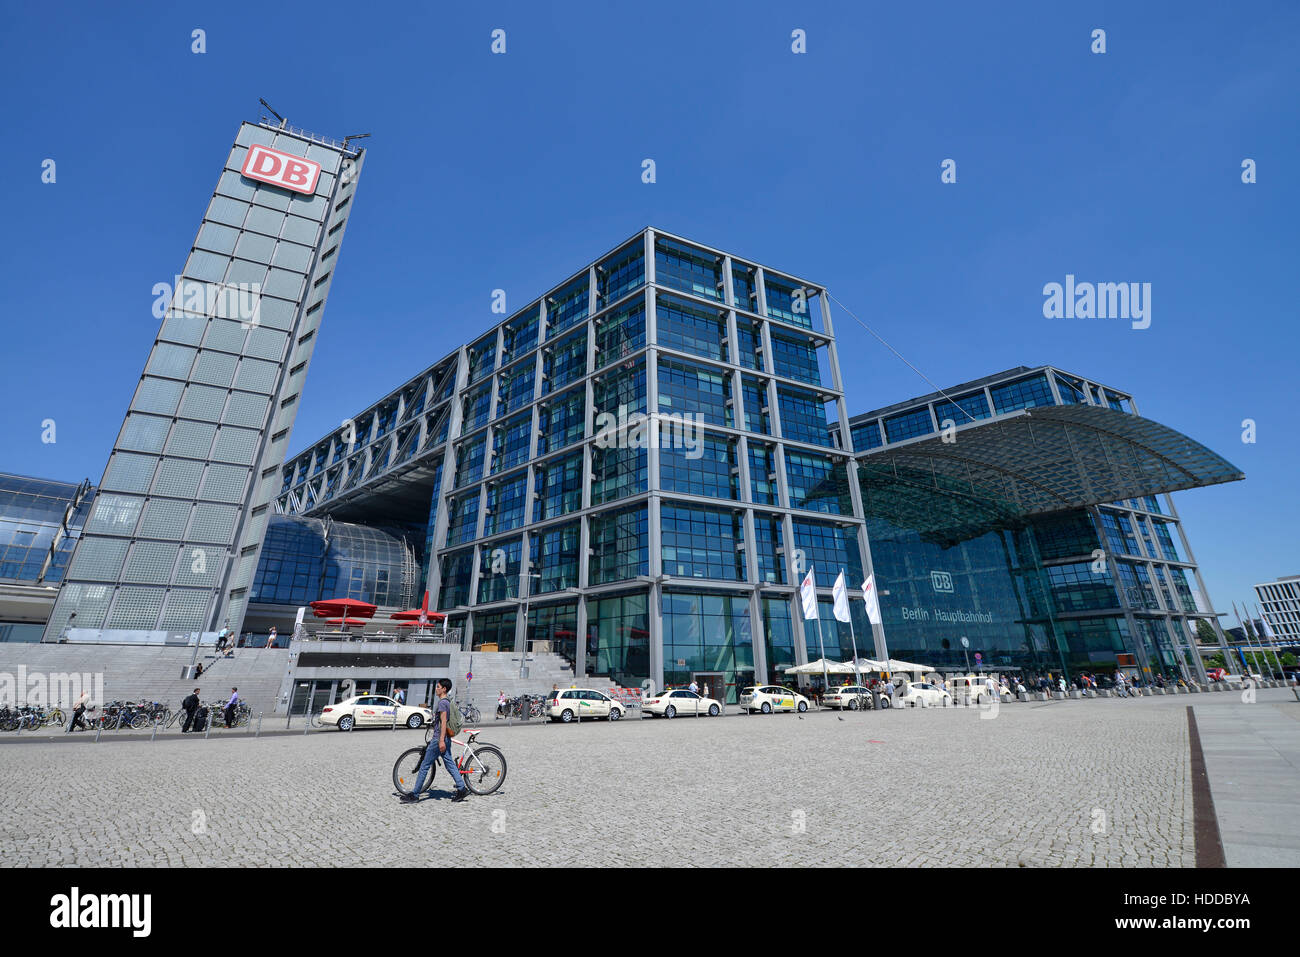 Hauptbahnhof, Moabit, Mitte, Berlin, Deutschland Foto de stock